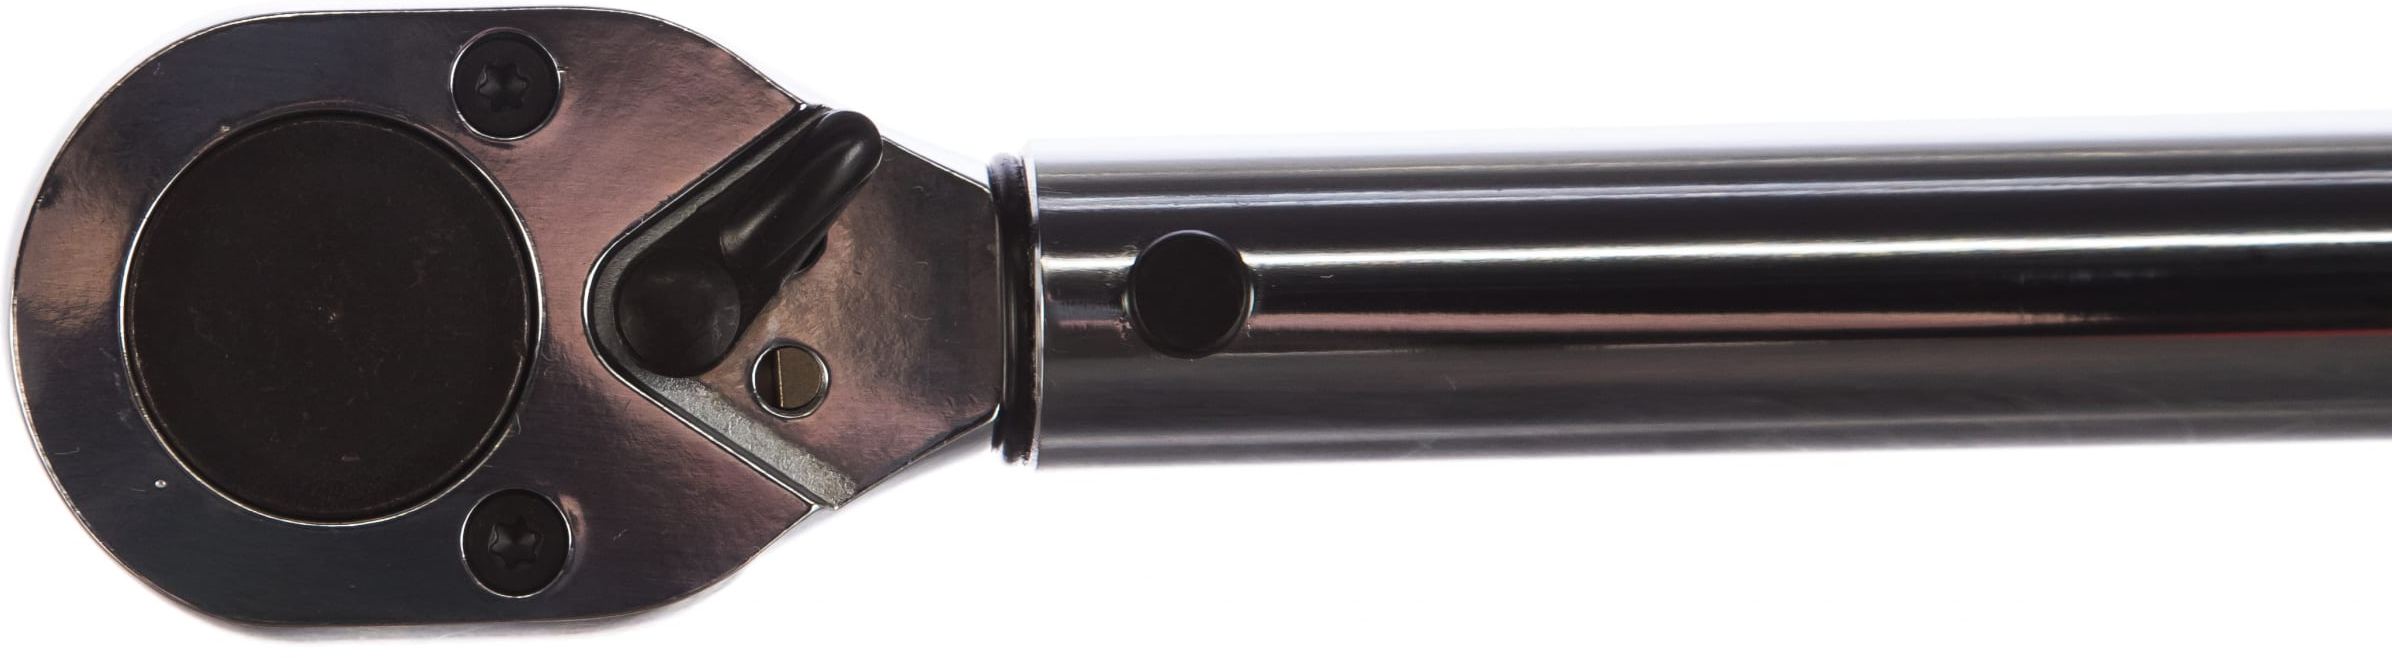 Ремонтный комплект для динамометрического ключа Ombra  A900, сталь Cr-V, 10 пр. - фото